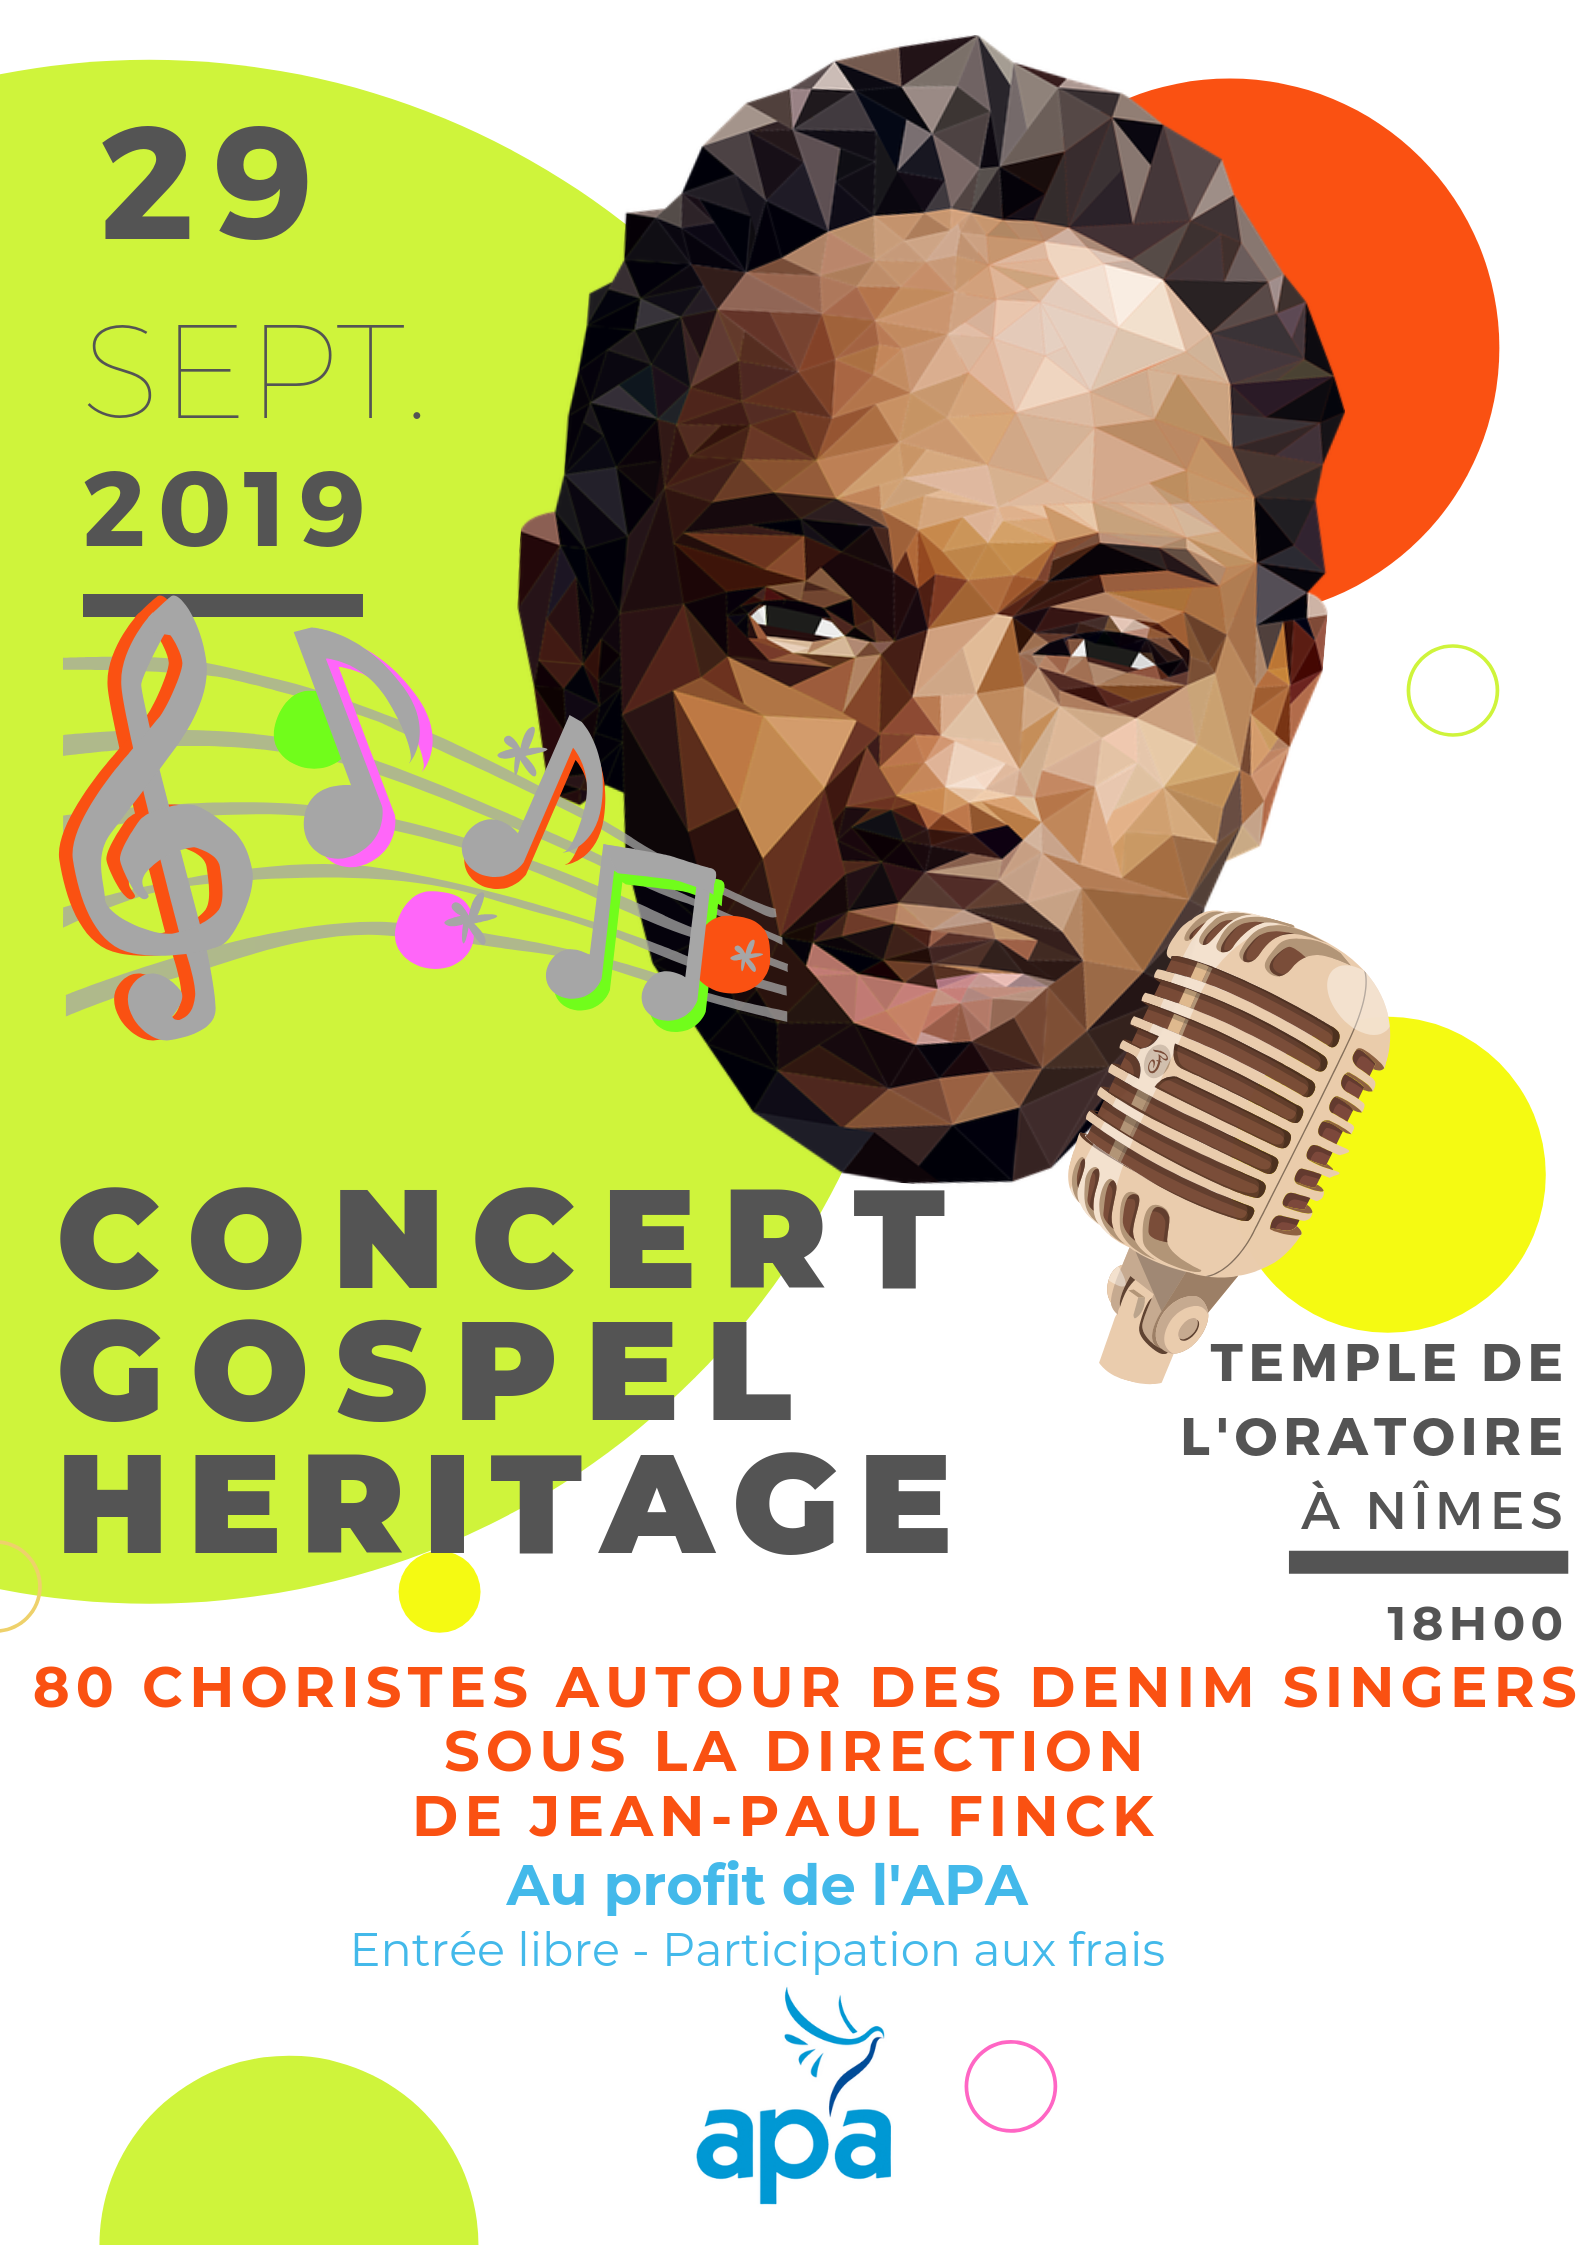 Concert Gospel Heritage 29092019 APA